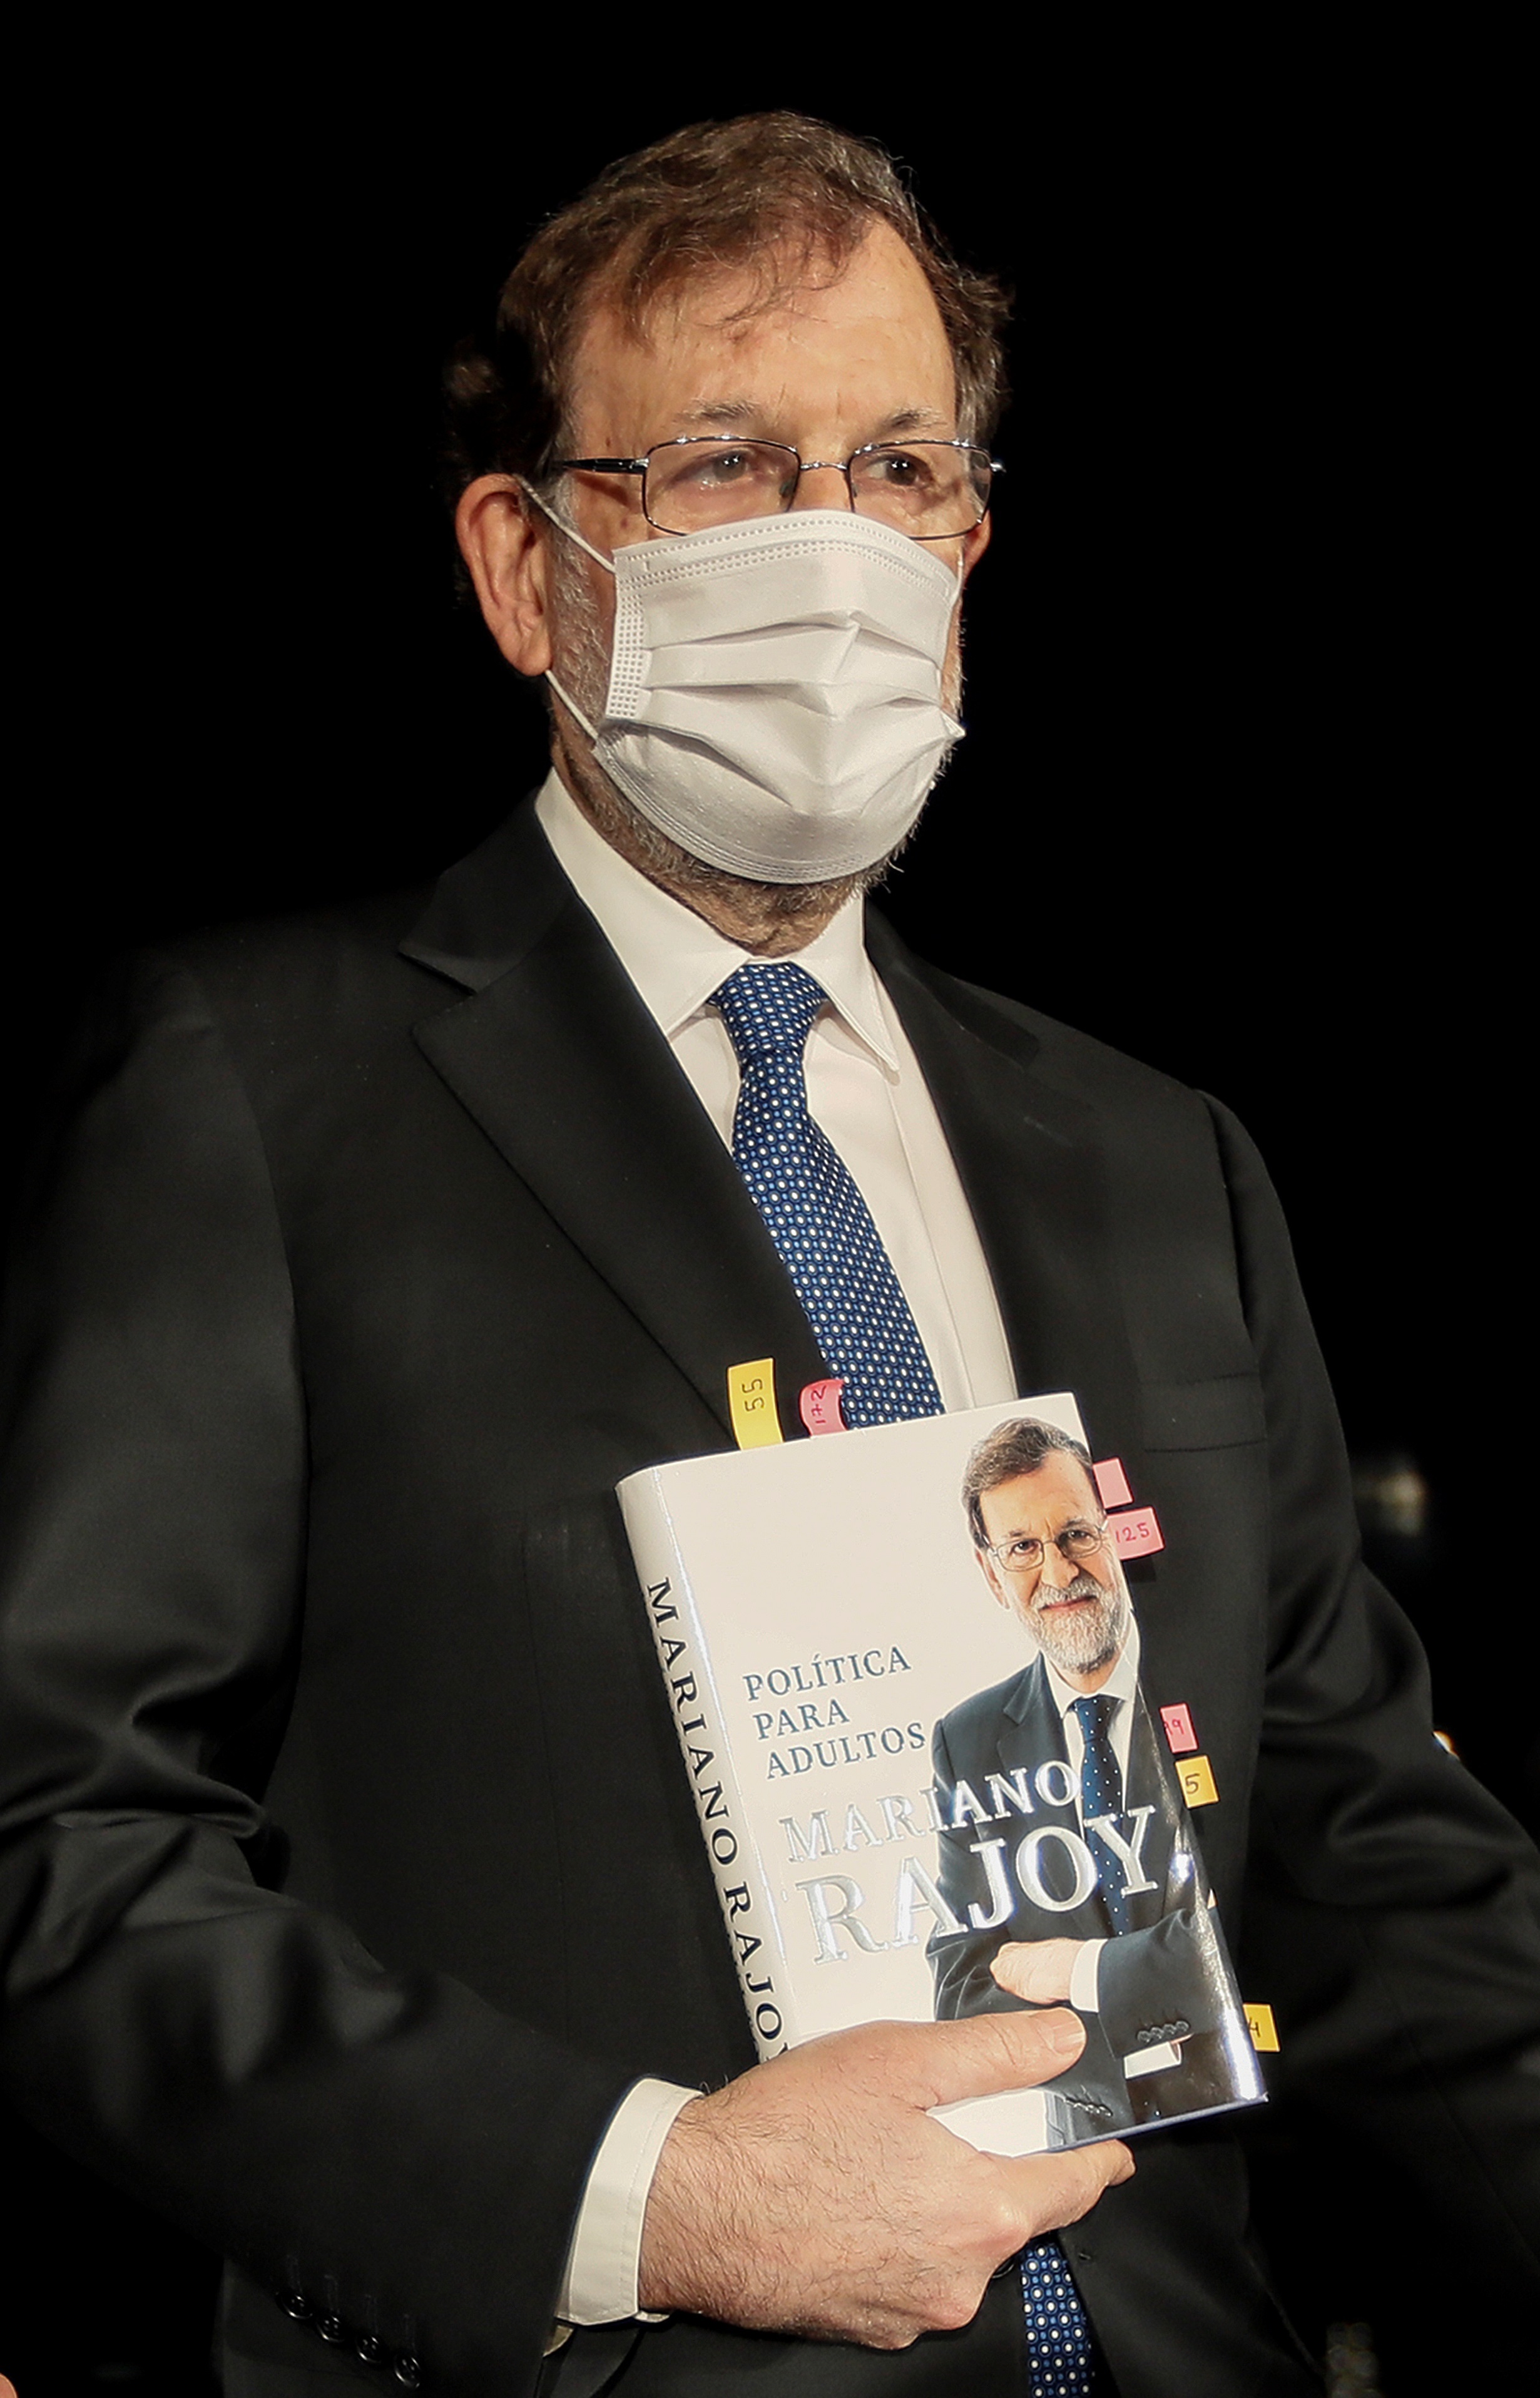 El ex presidente del Gobierno Mariano Rajoy durante la presentación este lunes en Sevilla de su libro "Política para adultos", un acto al que asistió el jefe del ejecutivo andaluz, Juanma Moreno.